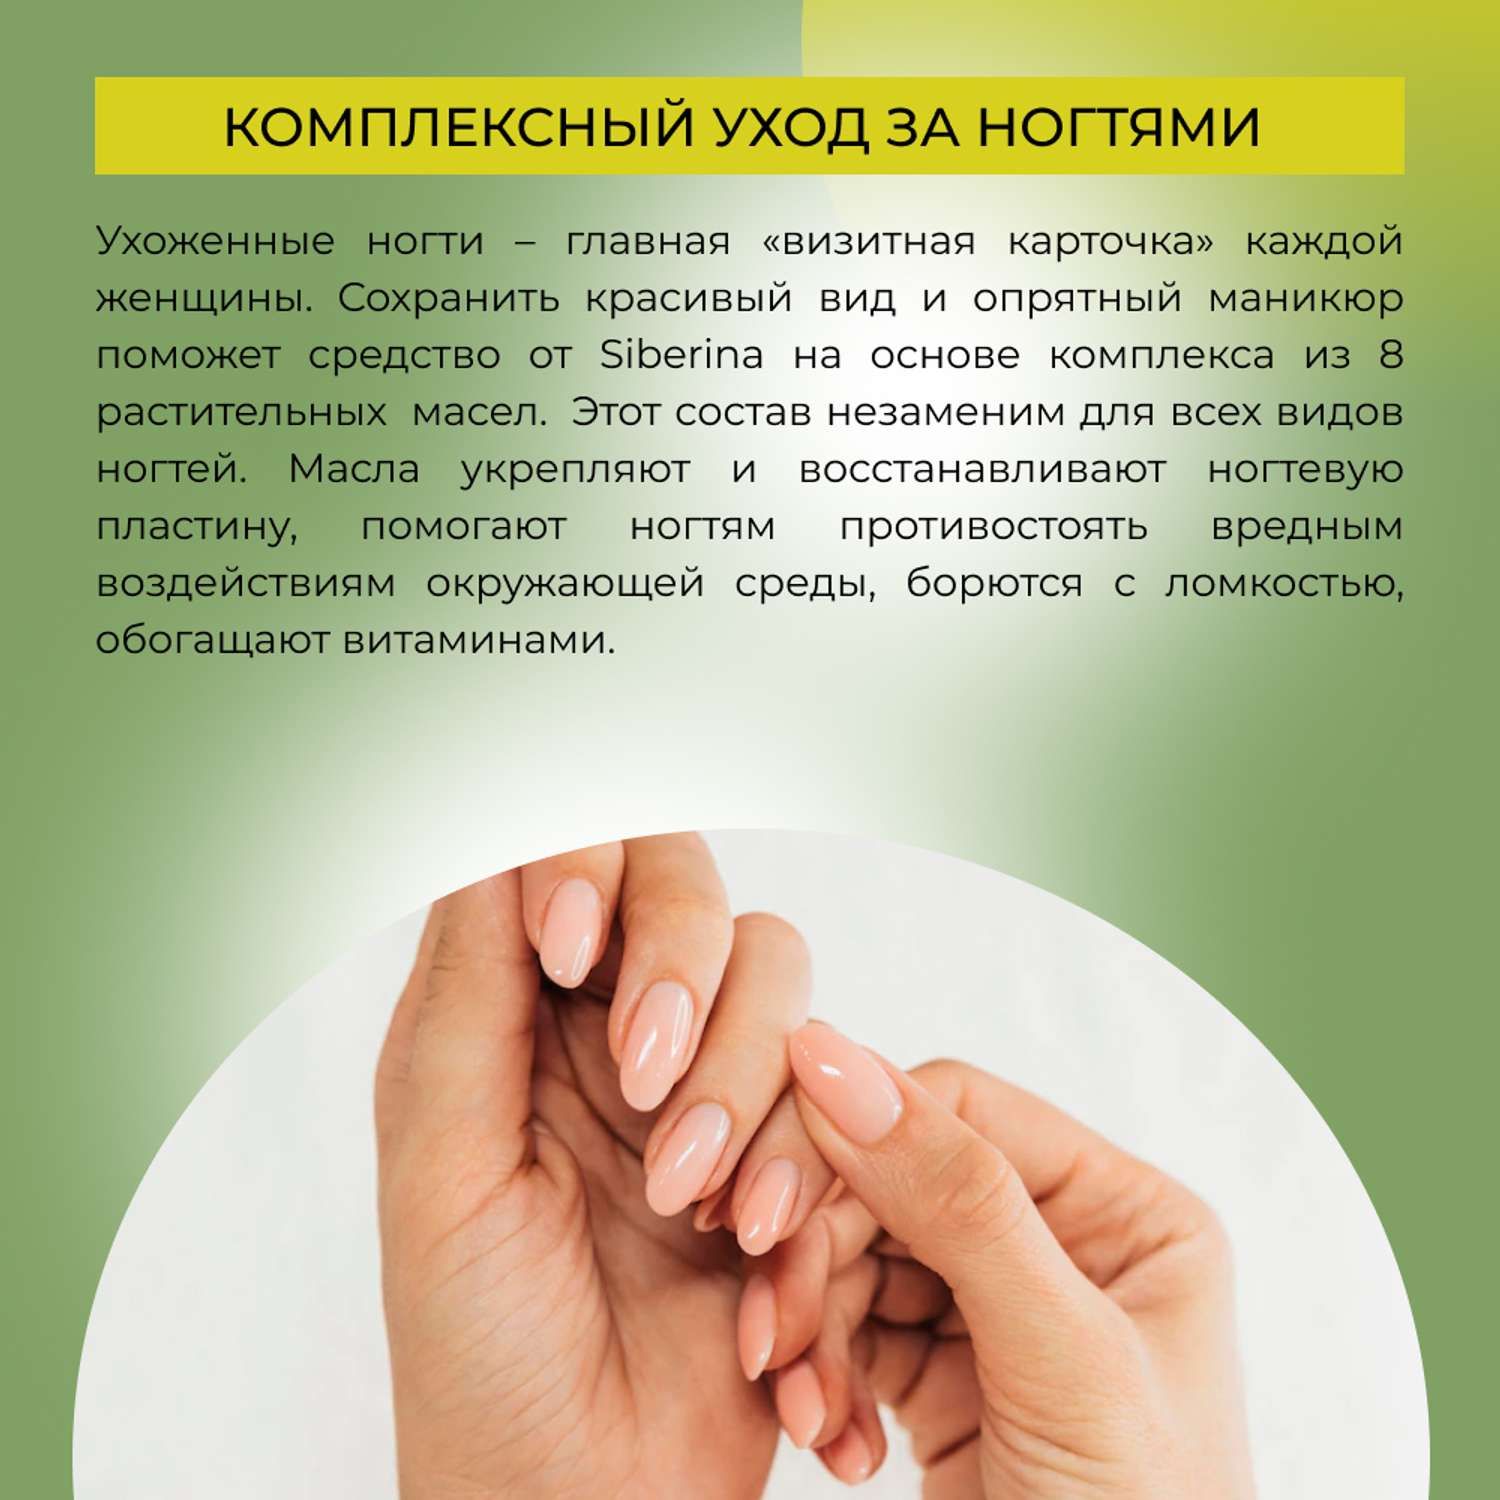 Комплекс масел Siberina натуральный «Мультивитаминный» для ногтей и кутикулы 10 мл - фото 5